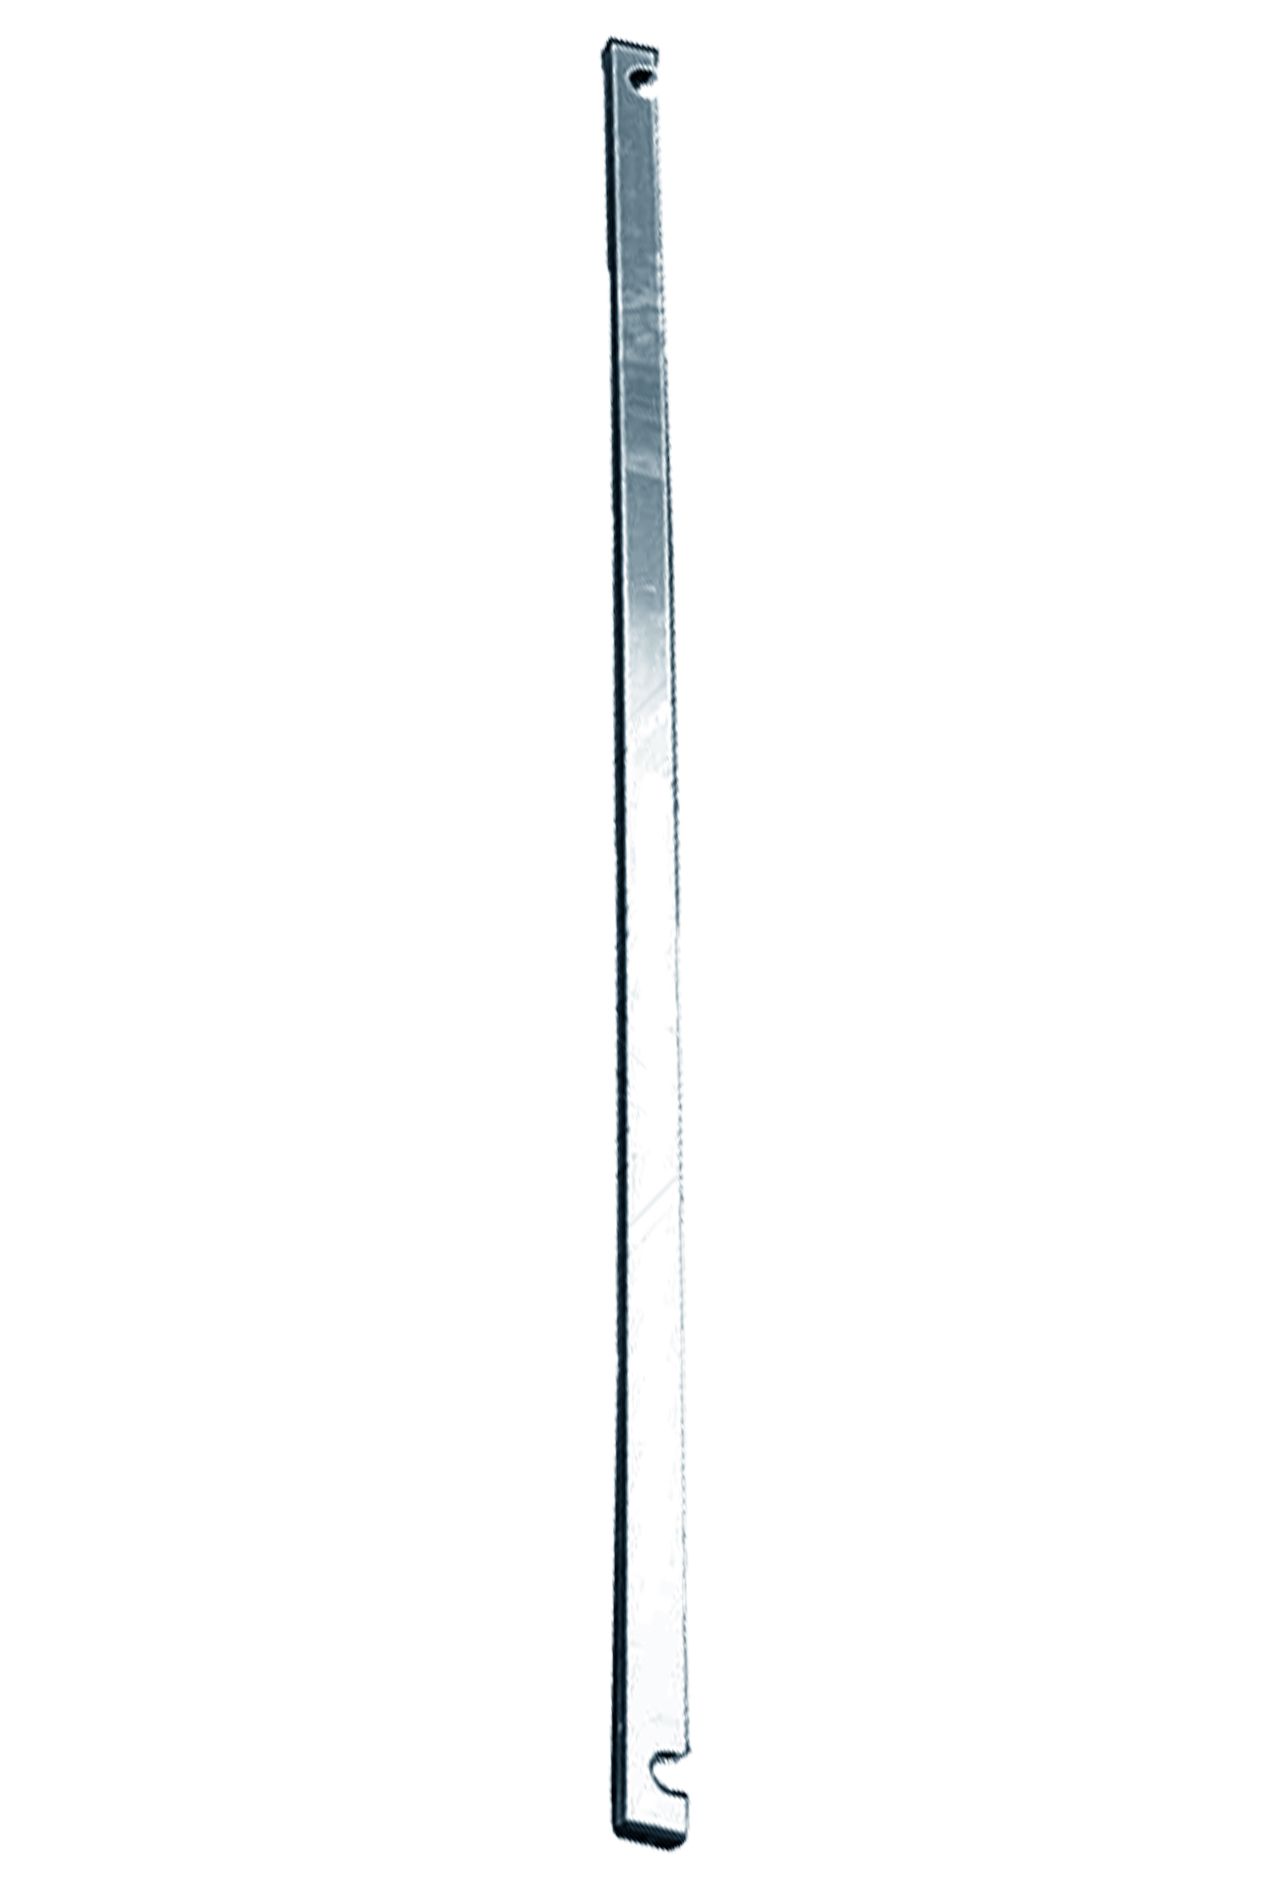 Дополнительное изображение Stabilo серии 1000 рабочая высота 14,2 м, размер площадки (3x0.75 м)